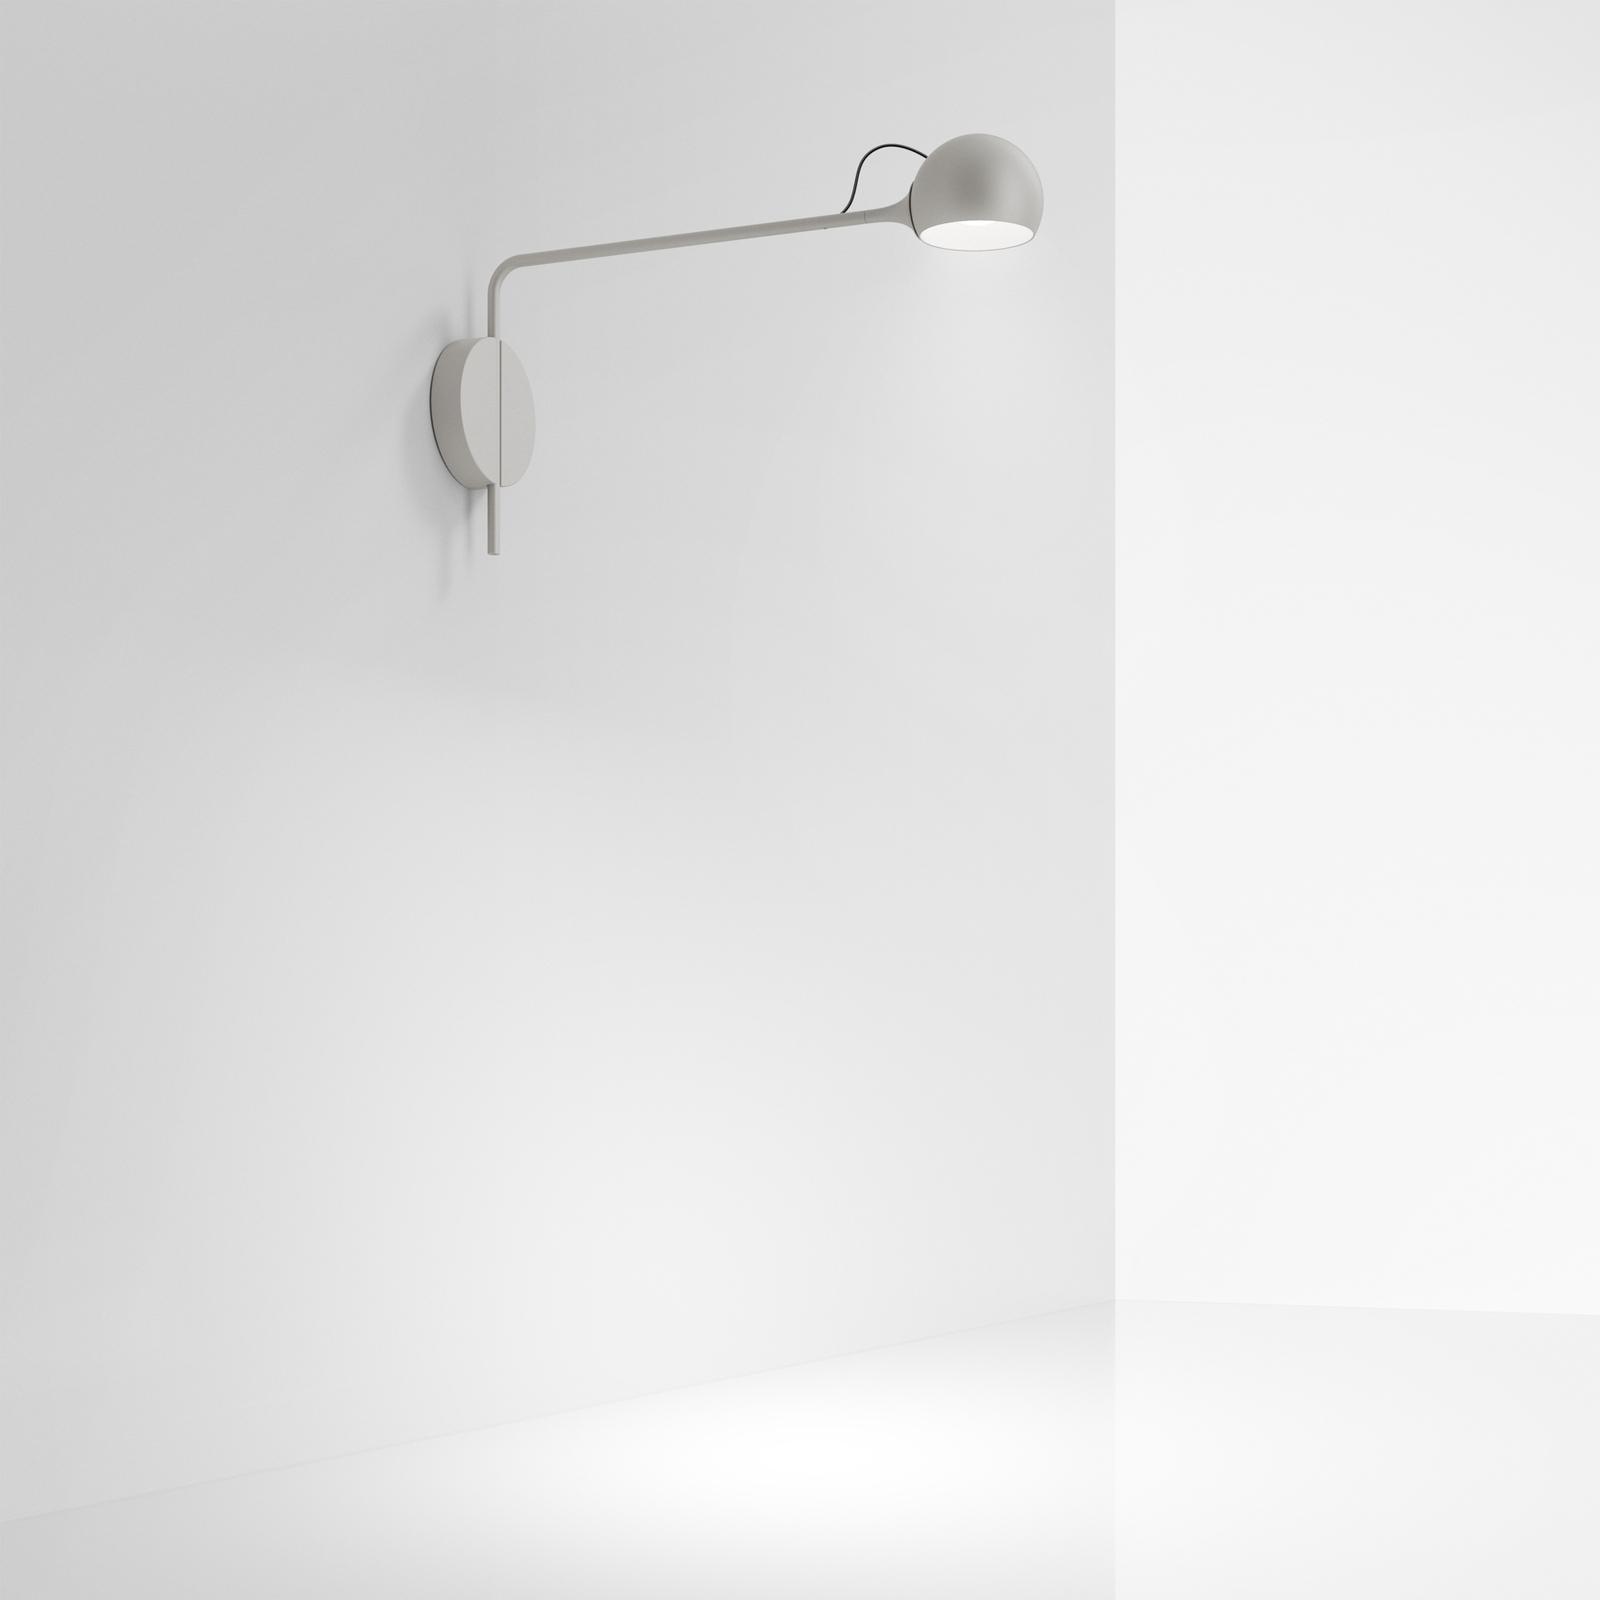 Artemide Ixa LED zidna svjetiljka, fiksna ruka, bijelo-siva